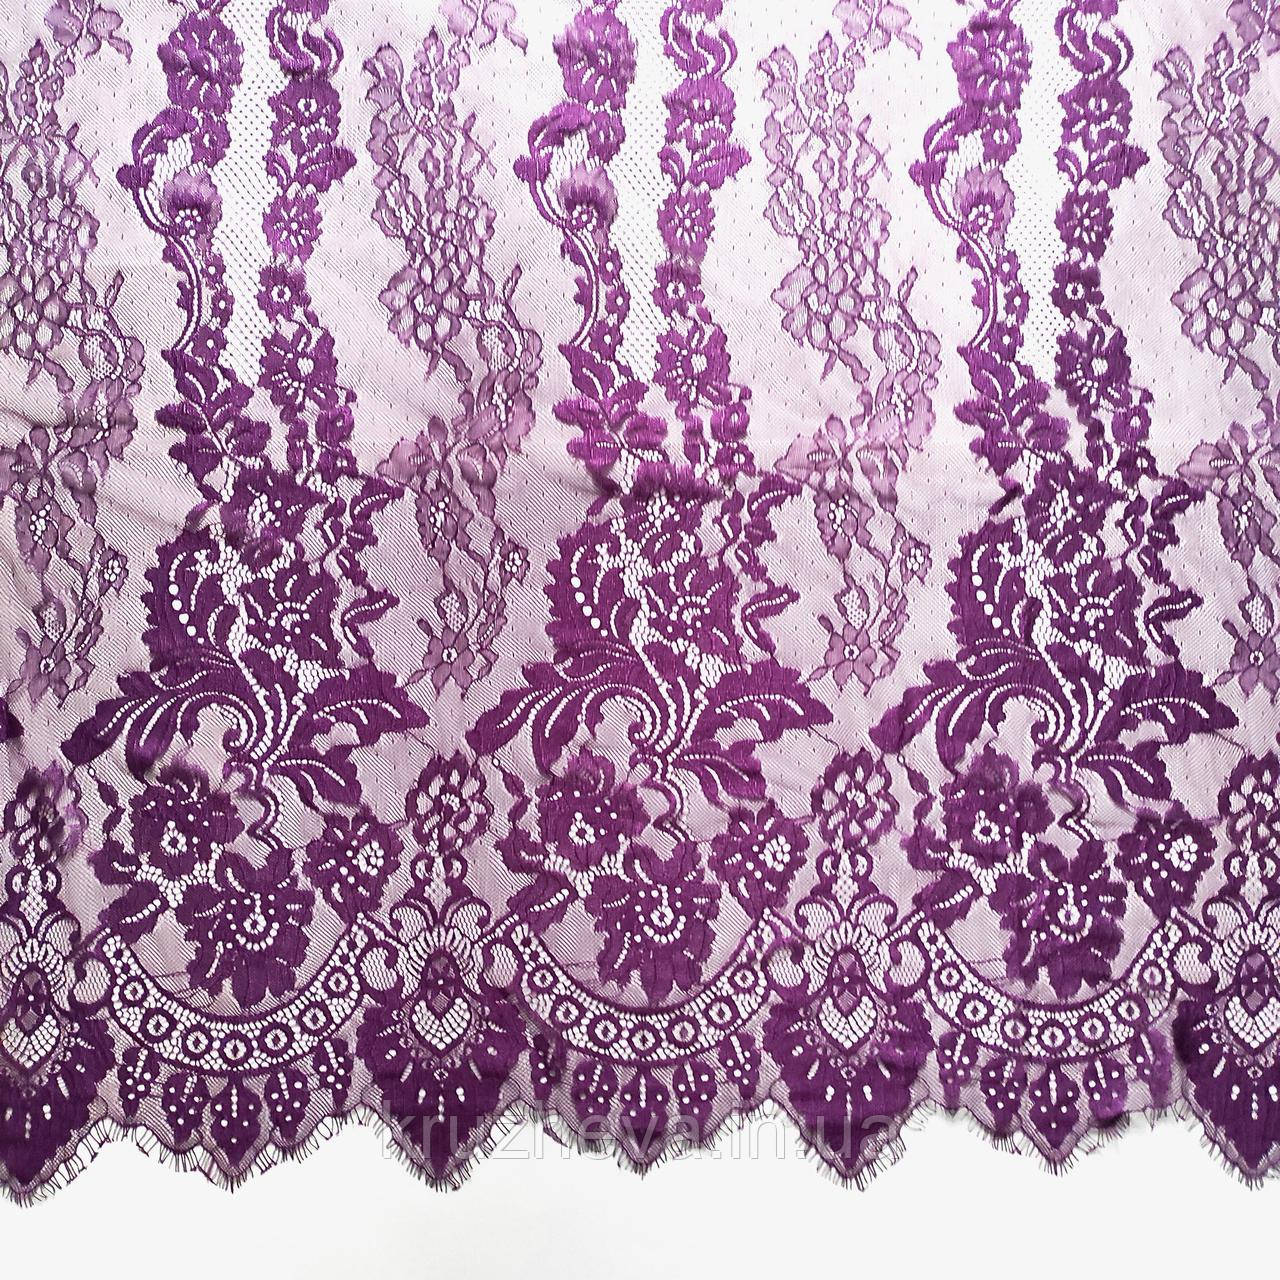 Ажурне французьке мереживо шантильї (з війками) фіолетового кольору, шириною 1,5 м, довжина купона 3,0 м.